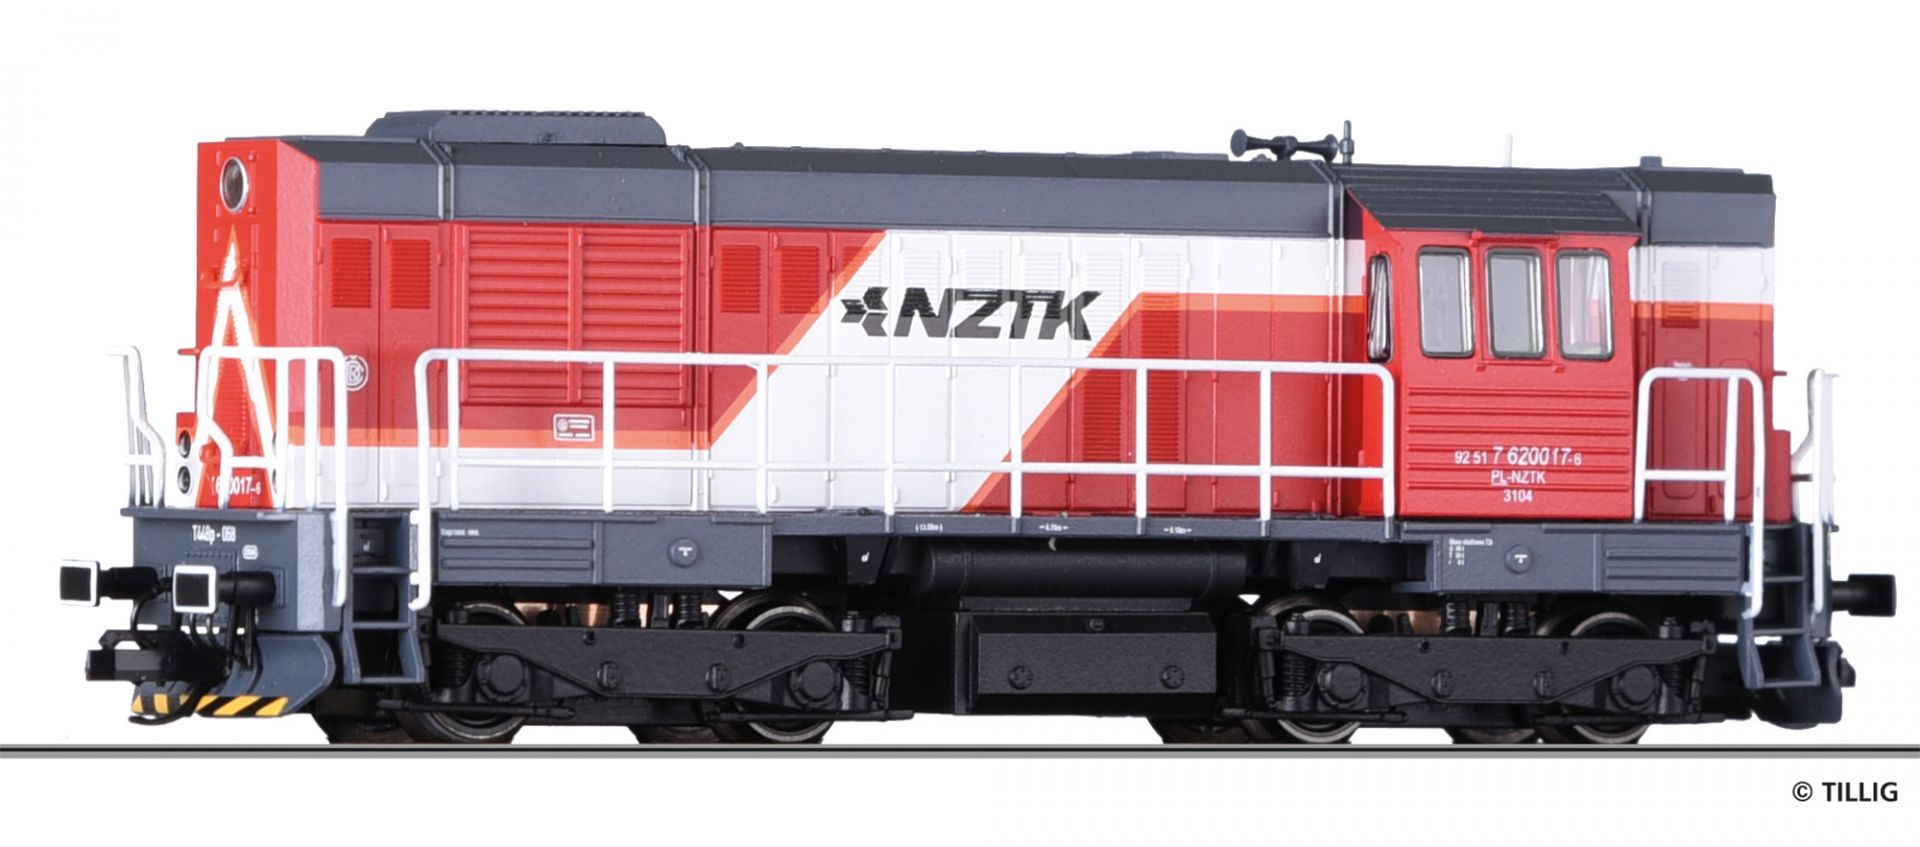 02766 | Diesellokomotive NZTK Sp.o.o. -werksseitig ausverkauft- 